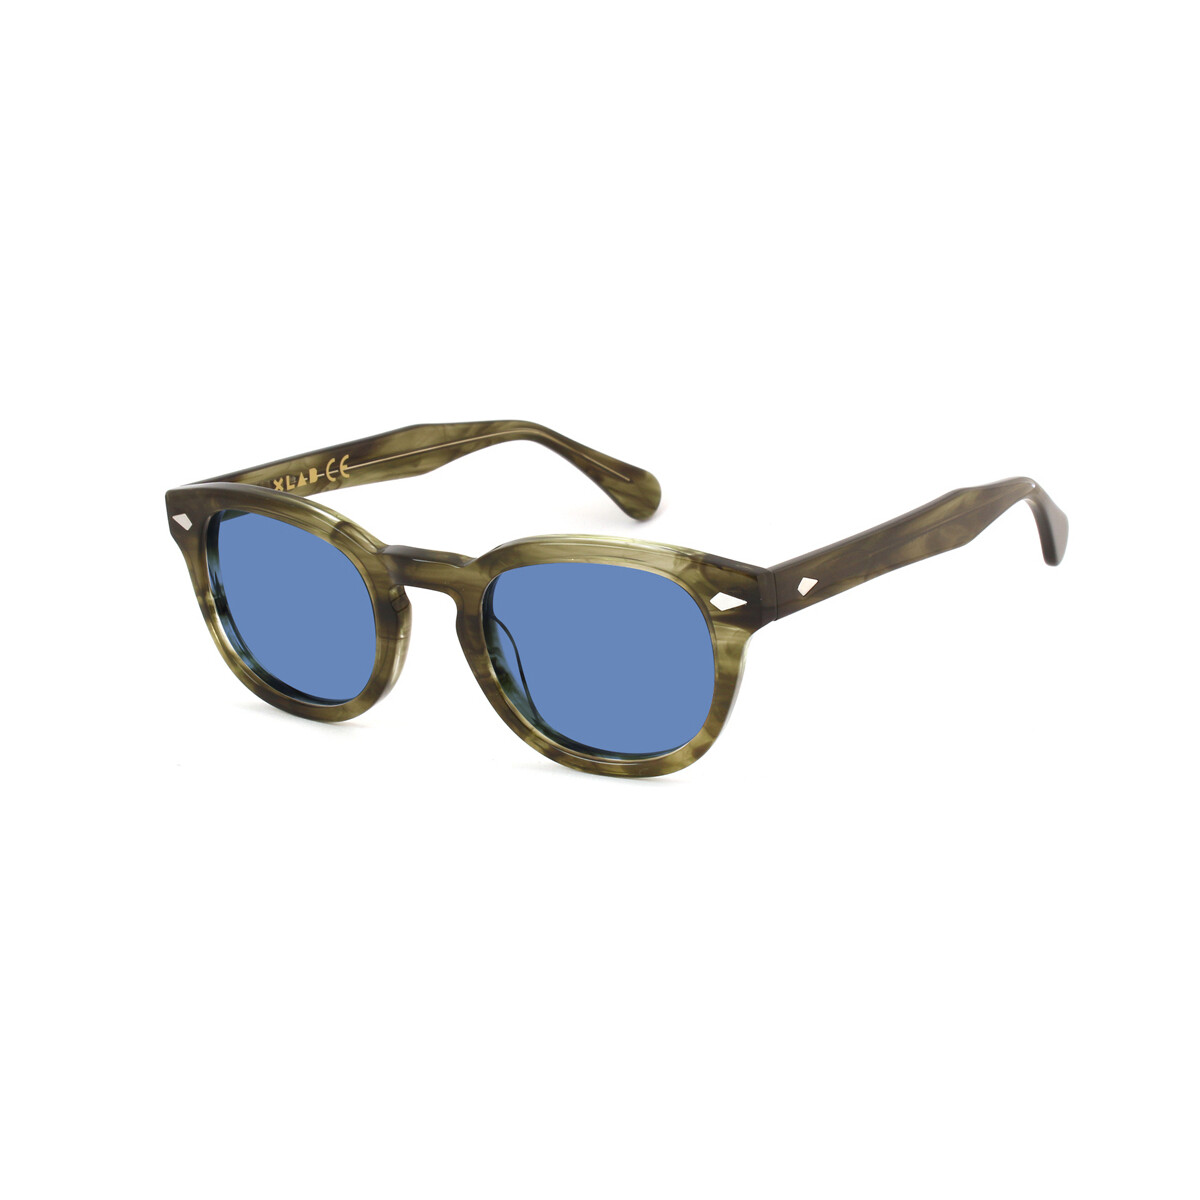 Orologi & Gioielli Occhiali da sole Xlab 8004 stile moscot Occhiali da sole, Verde strisciato/Azzurro Altri